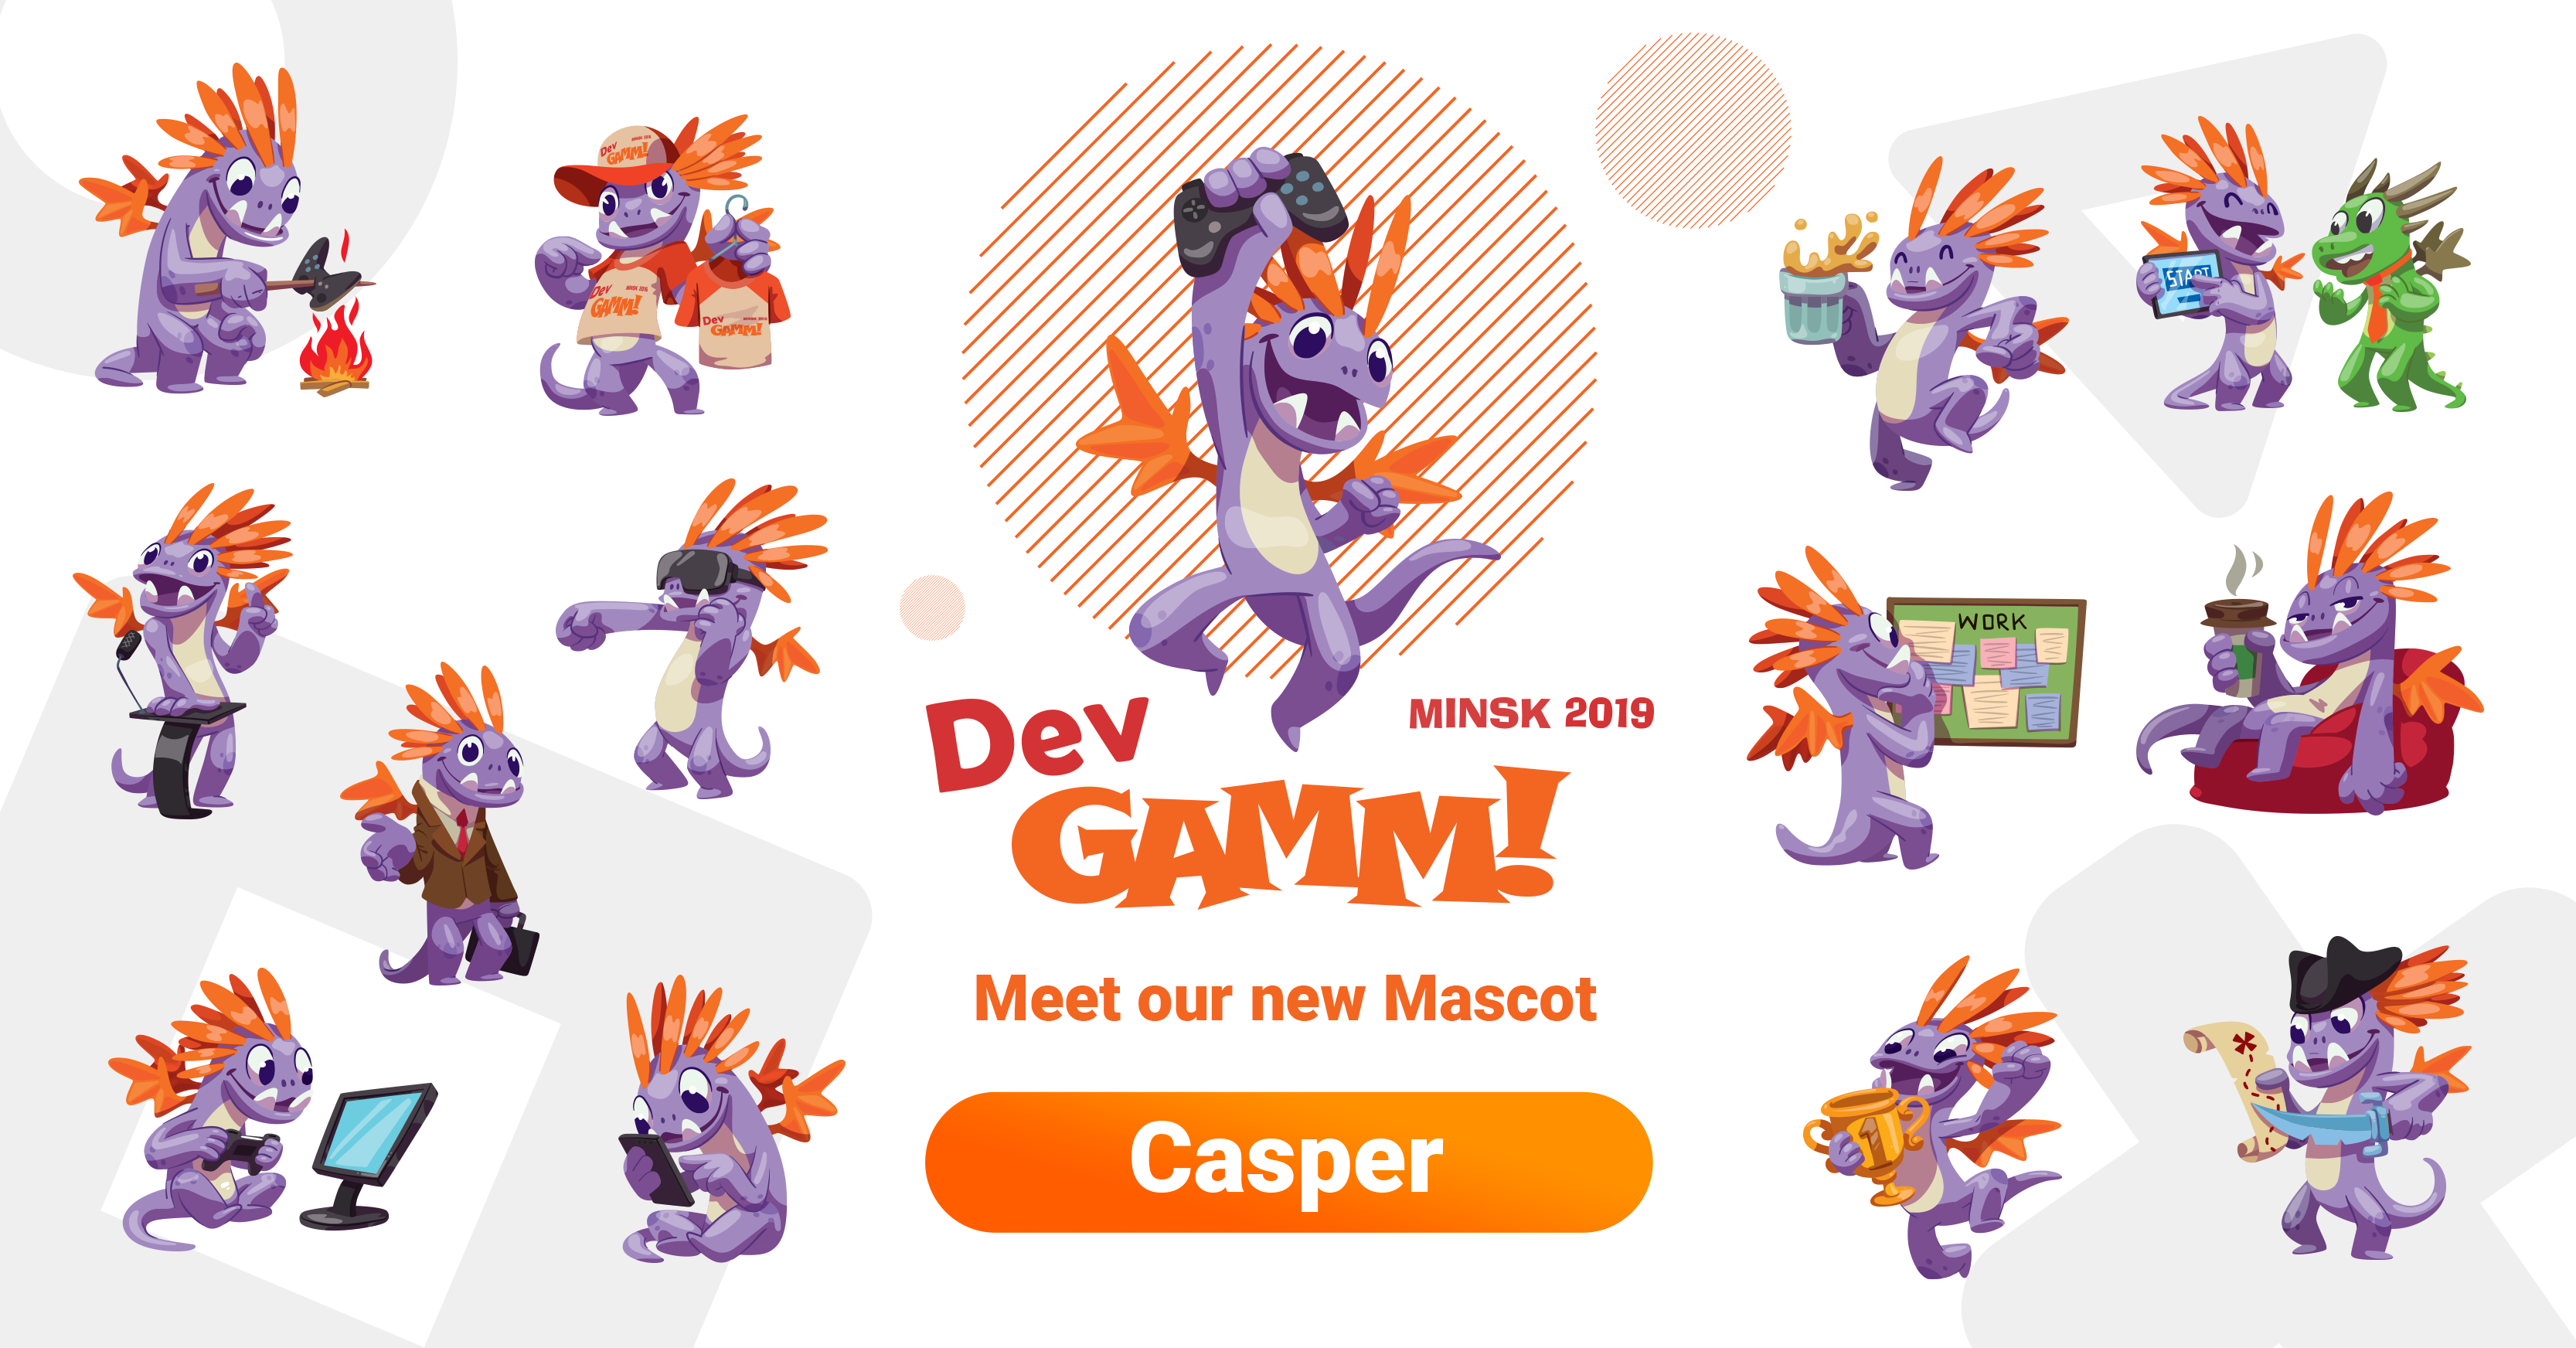 The Story of Casper Dragon: New Mascot of DevGAMM